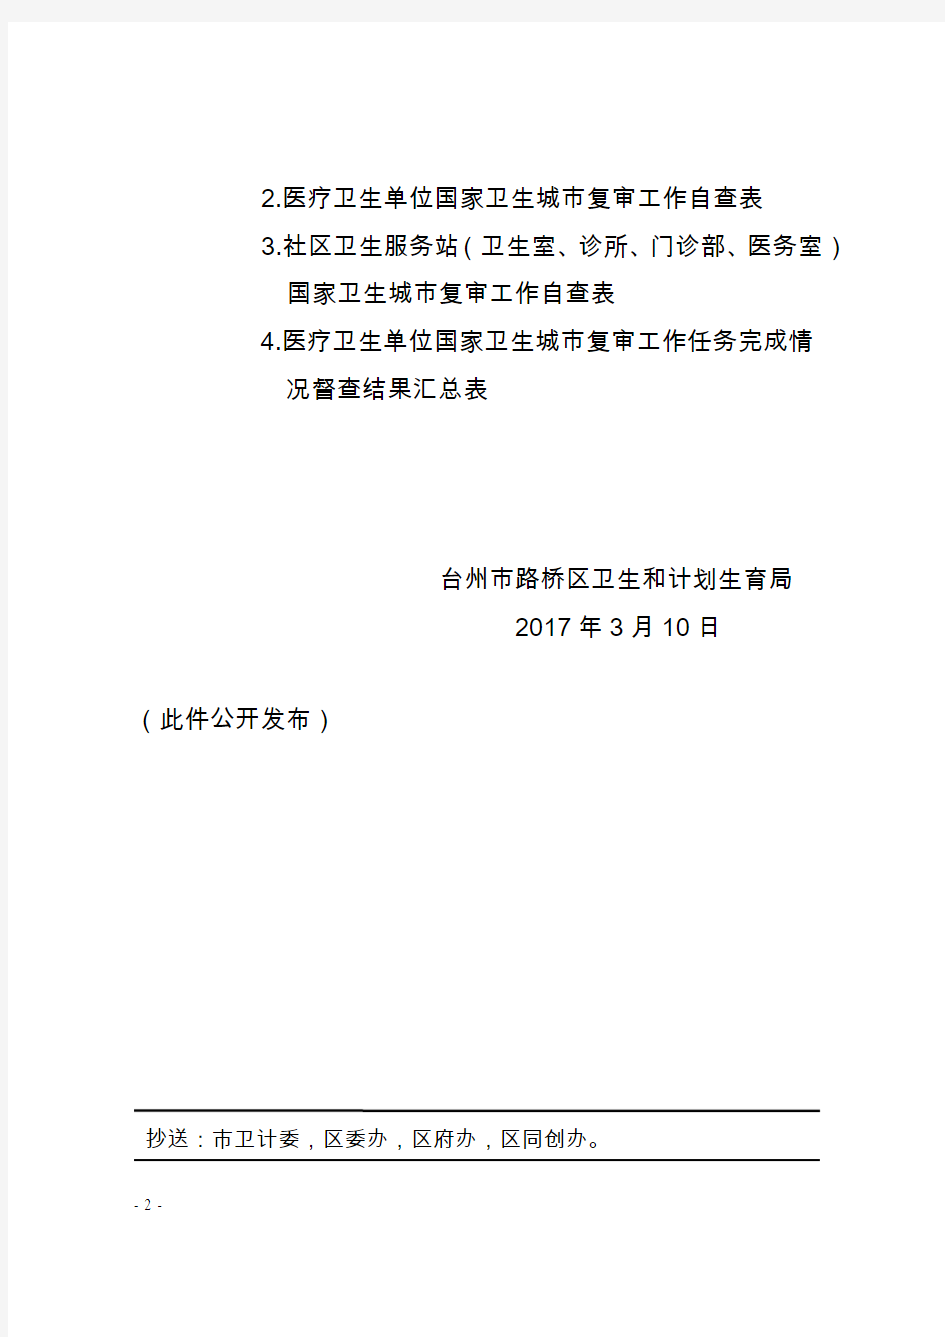 台州市路桥区卫生和计划生育局文件